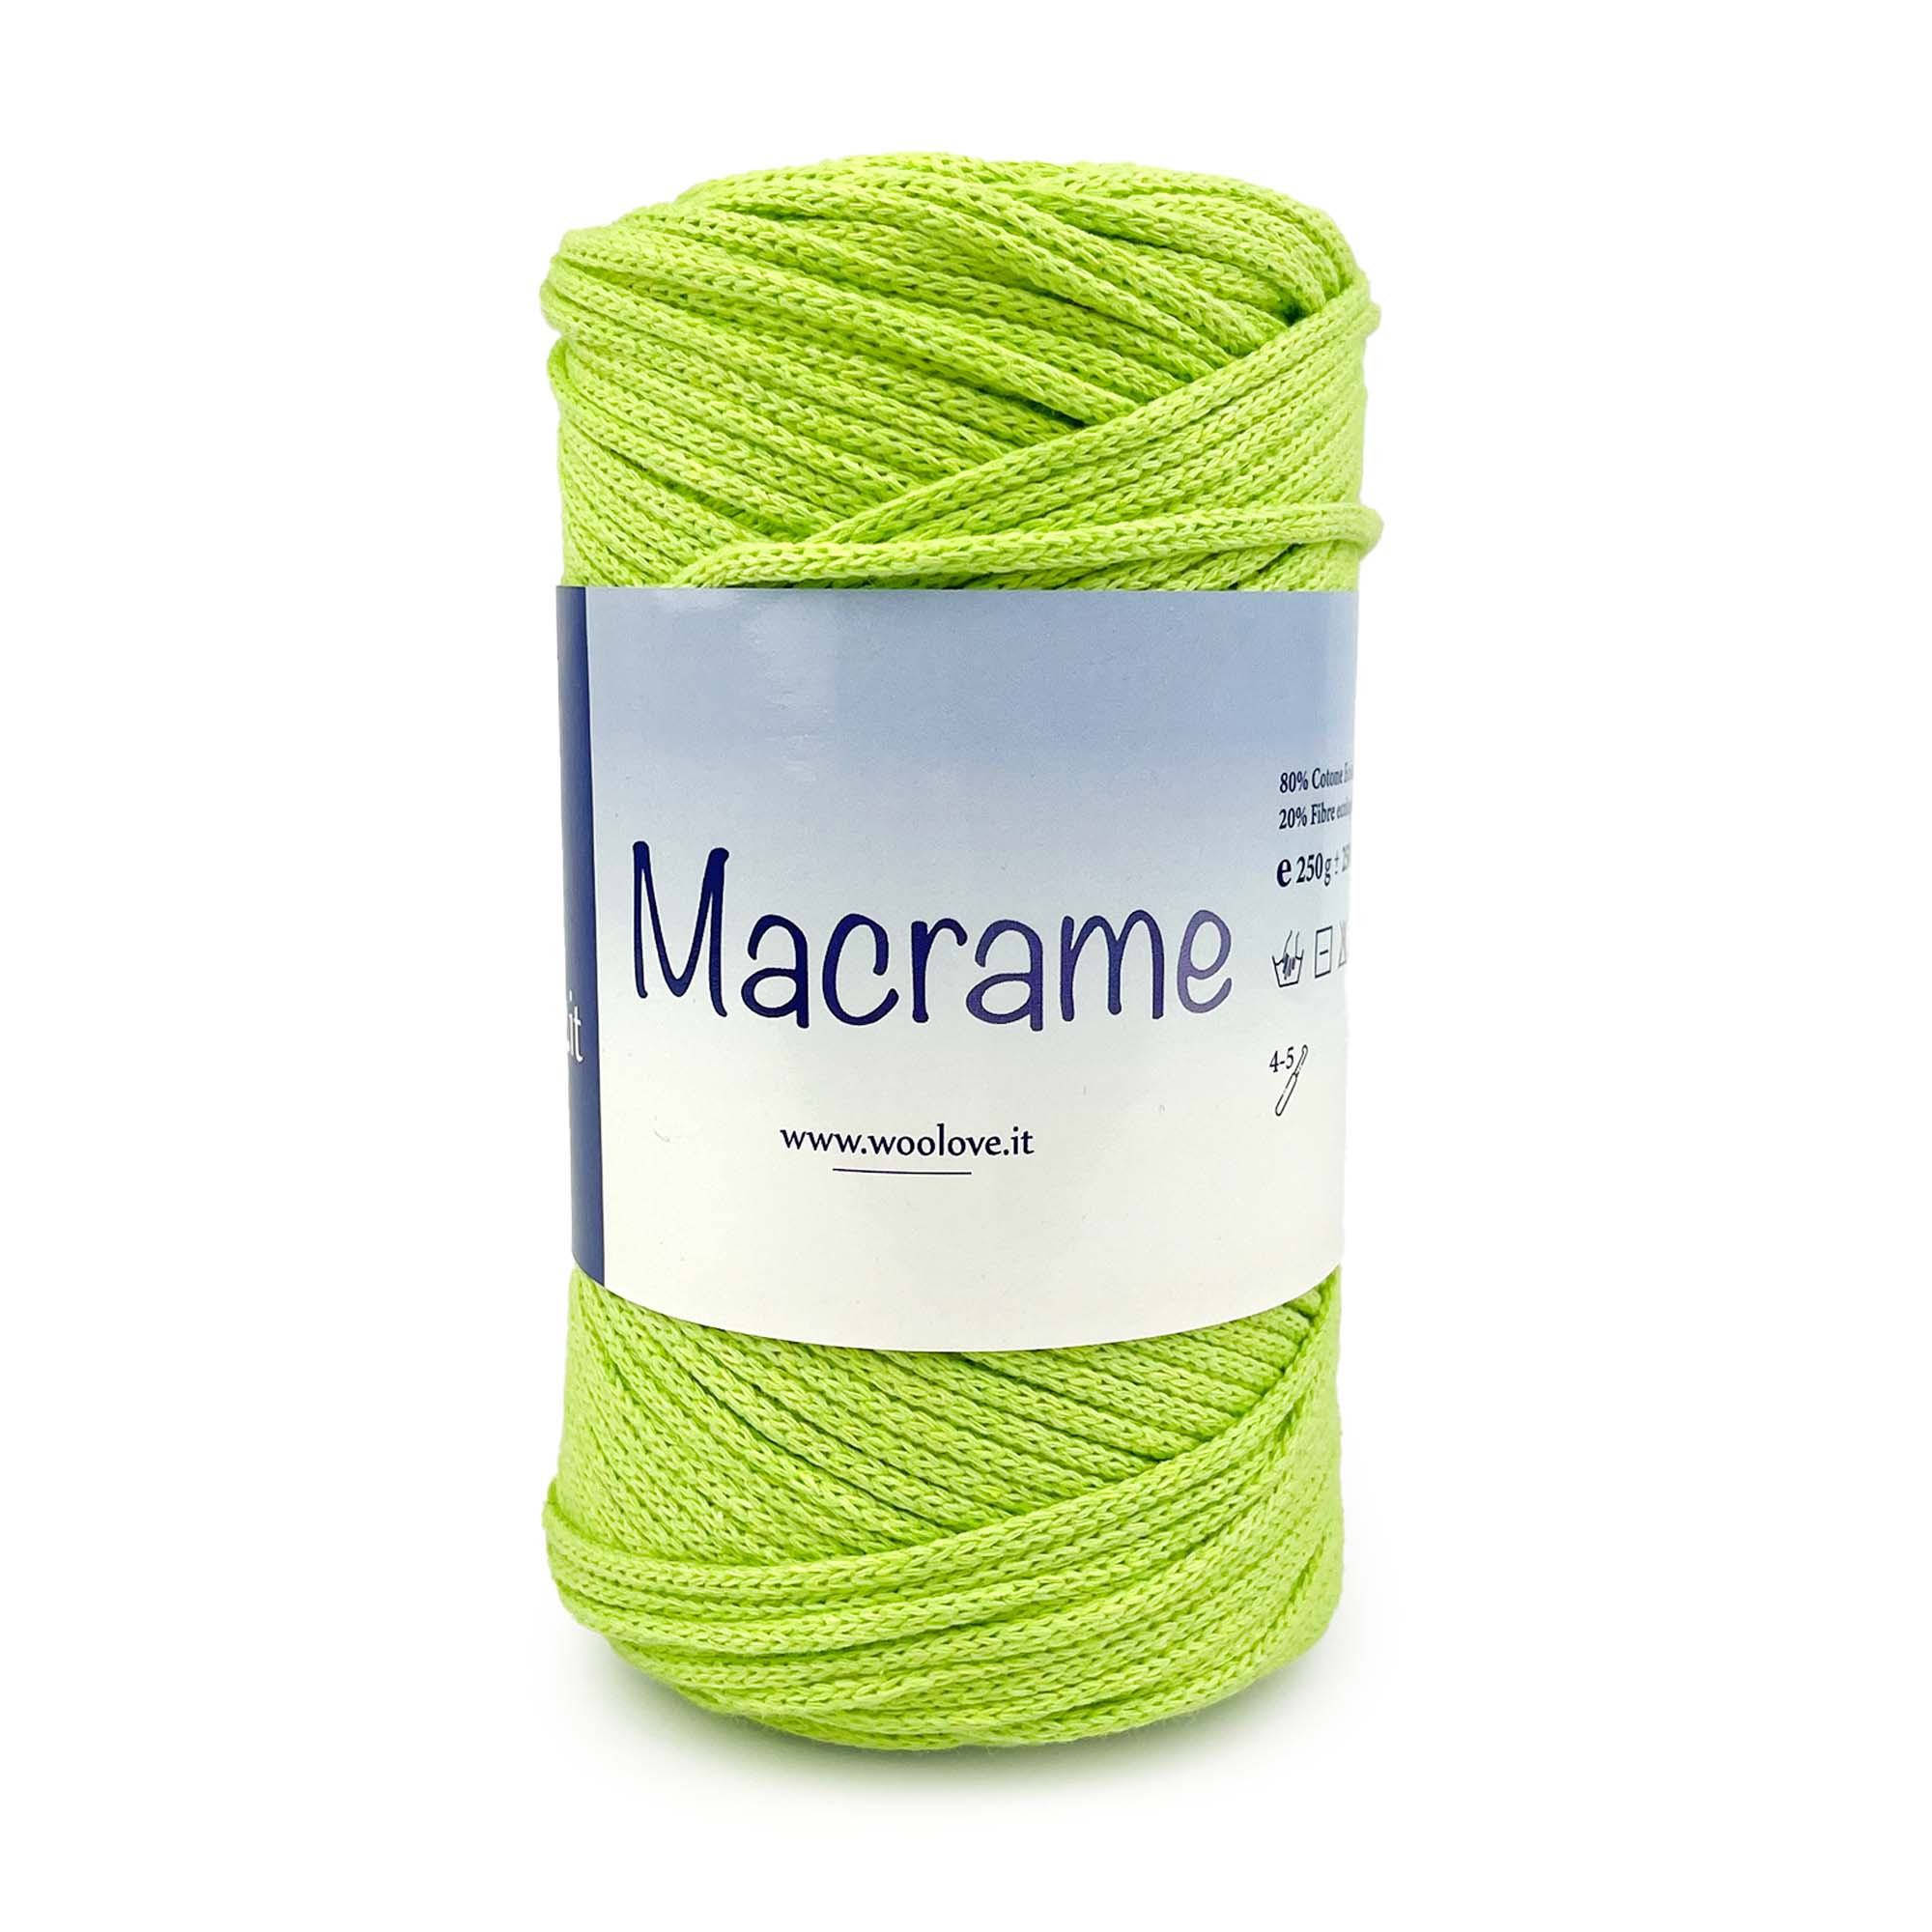 Macramè by Woolove - Fettuccia 100% Cotone ideale per accessori